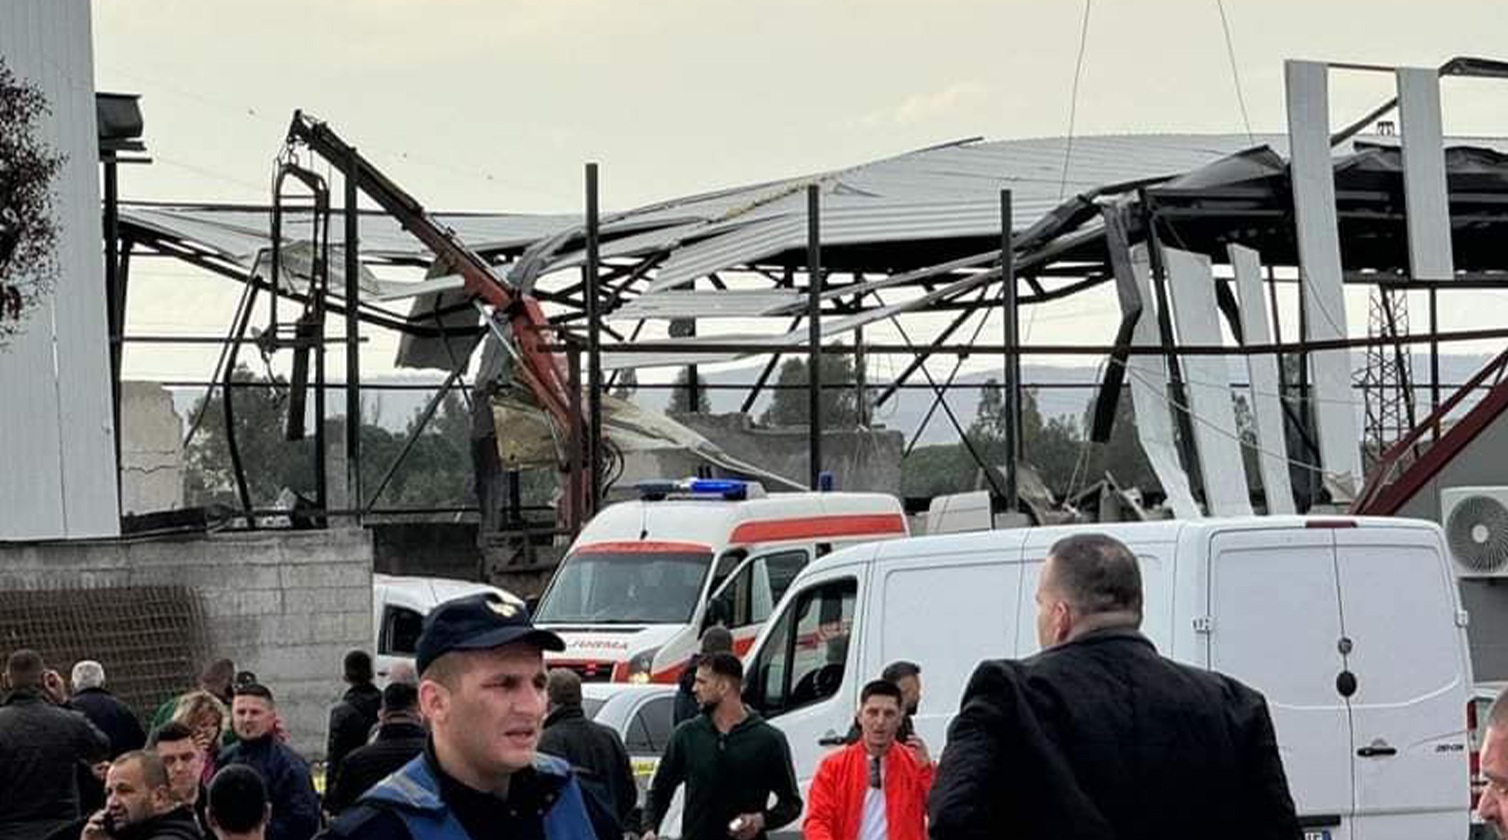 Shpërthimi tragjik në Lushnjë/ Qytetari: Biznesi ishte në shkelje të ligjit!